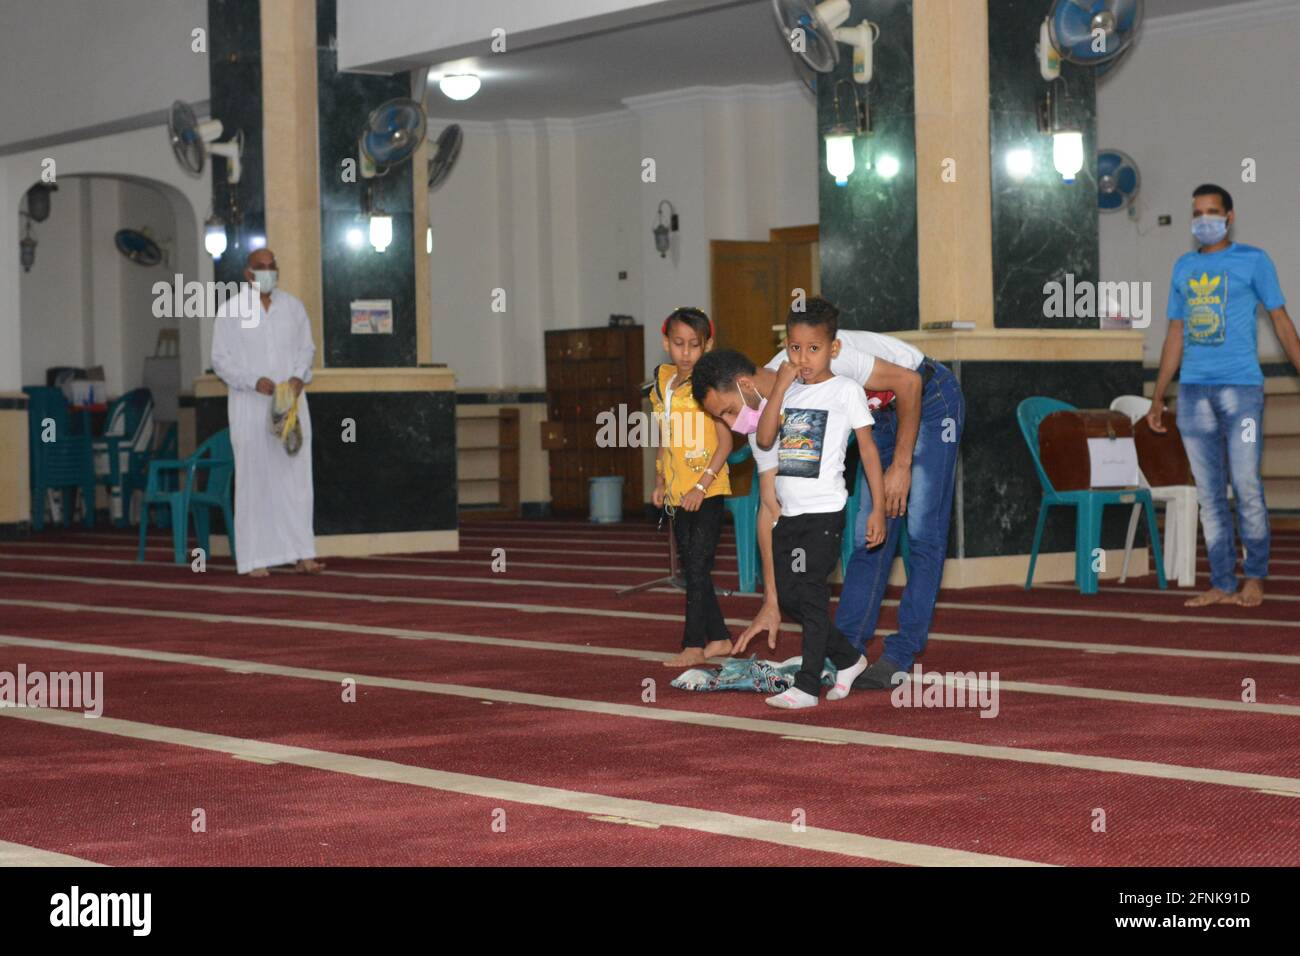 Les musulmans exécutent les premières prières d'Eid Al-Fitr dans les mosquées de Covid-19 l'ère de la pandémie dans le cadre des récentes mesures d'innocuité de l'anti-coronavirus en grande taille mosquées Banque D'Images